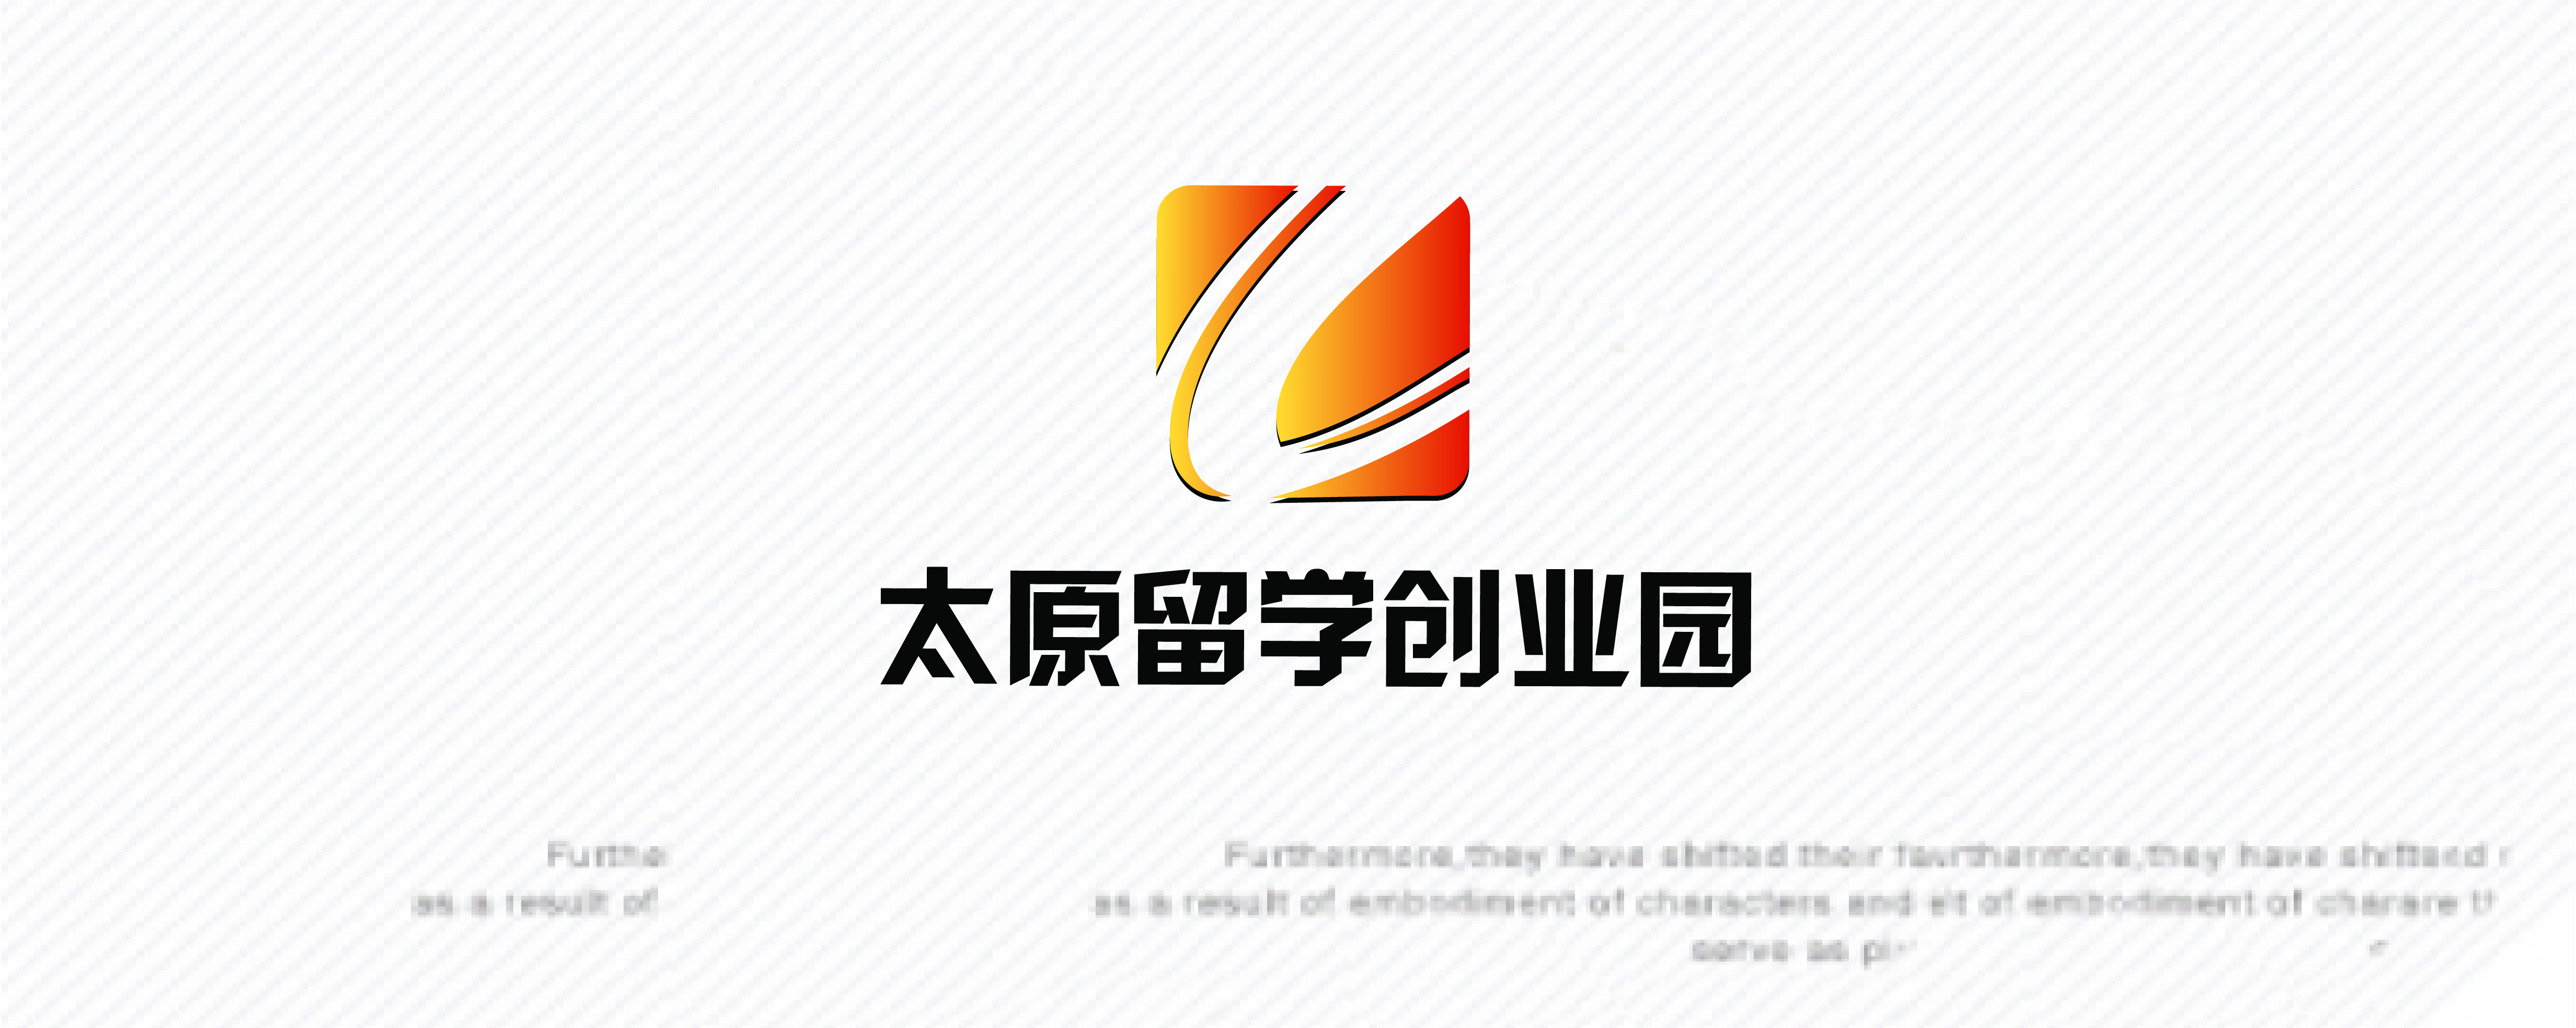 太原留学人员创业园logo设计